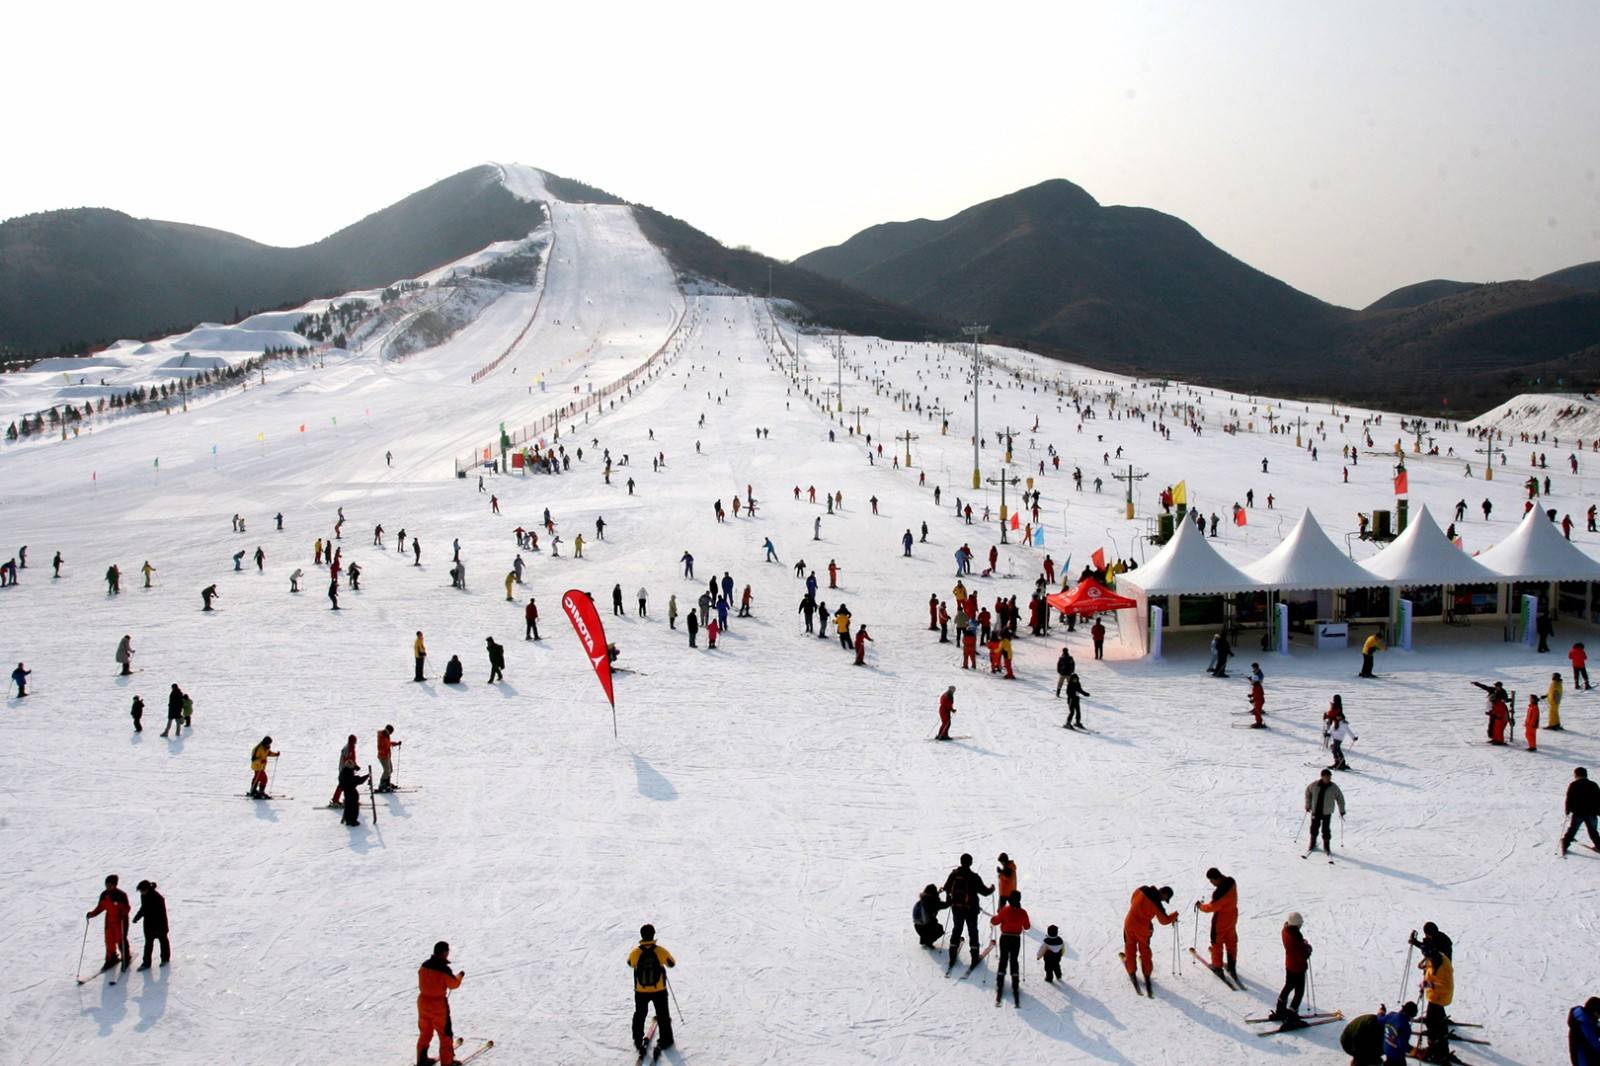 北京万科石京龙滑雪场,北京万科八达岭旅游开发有限公司